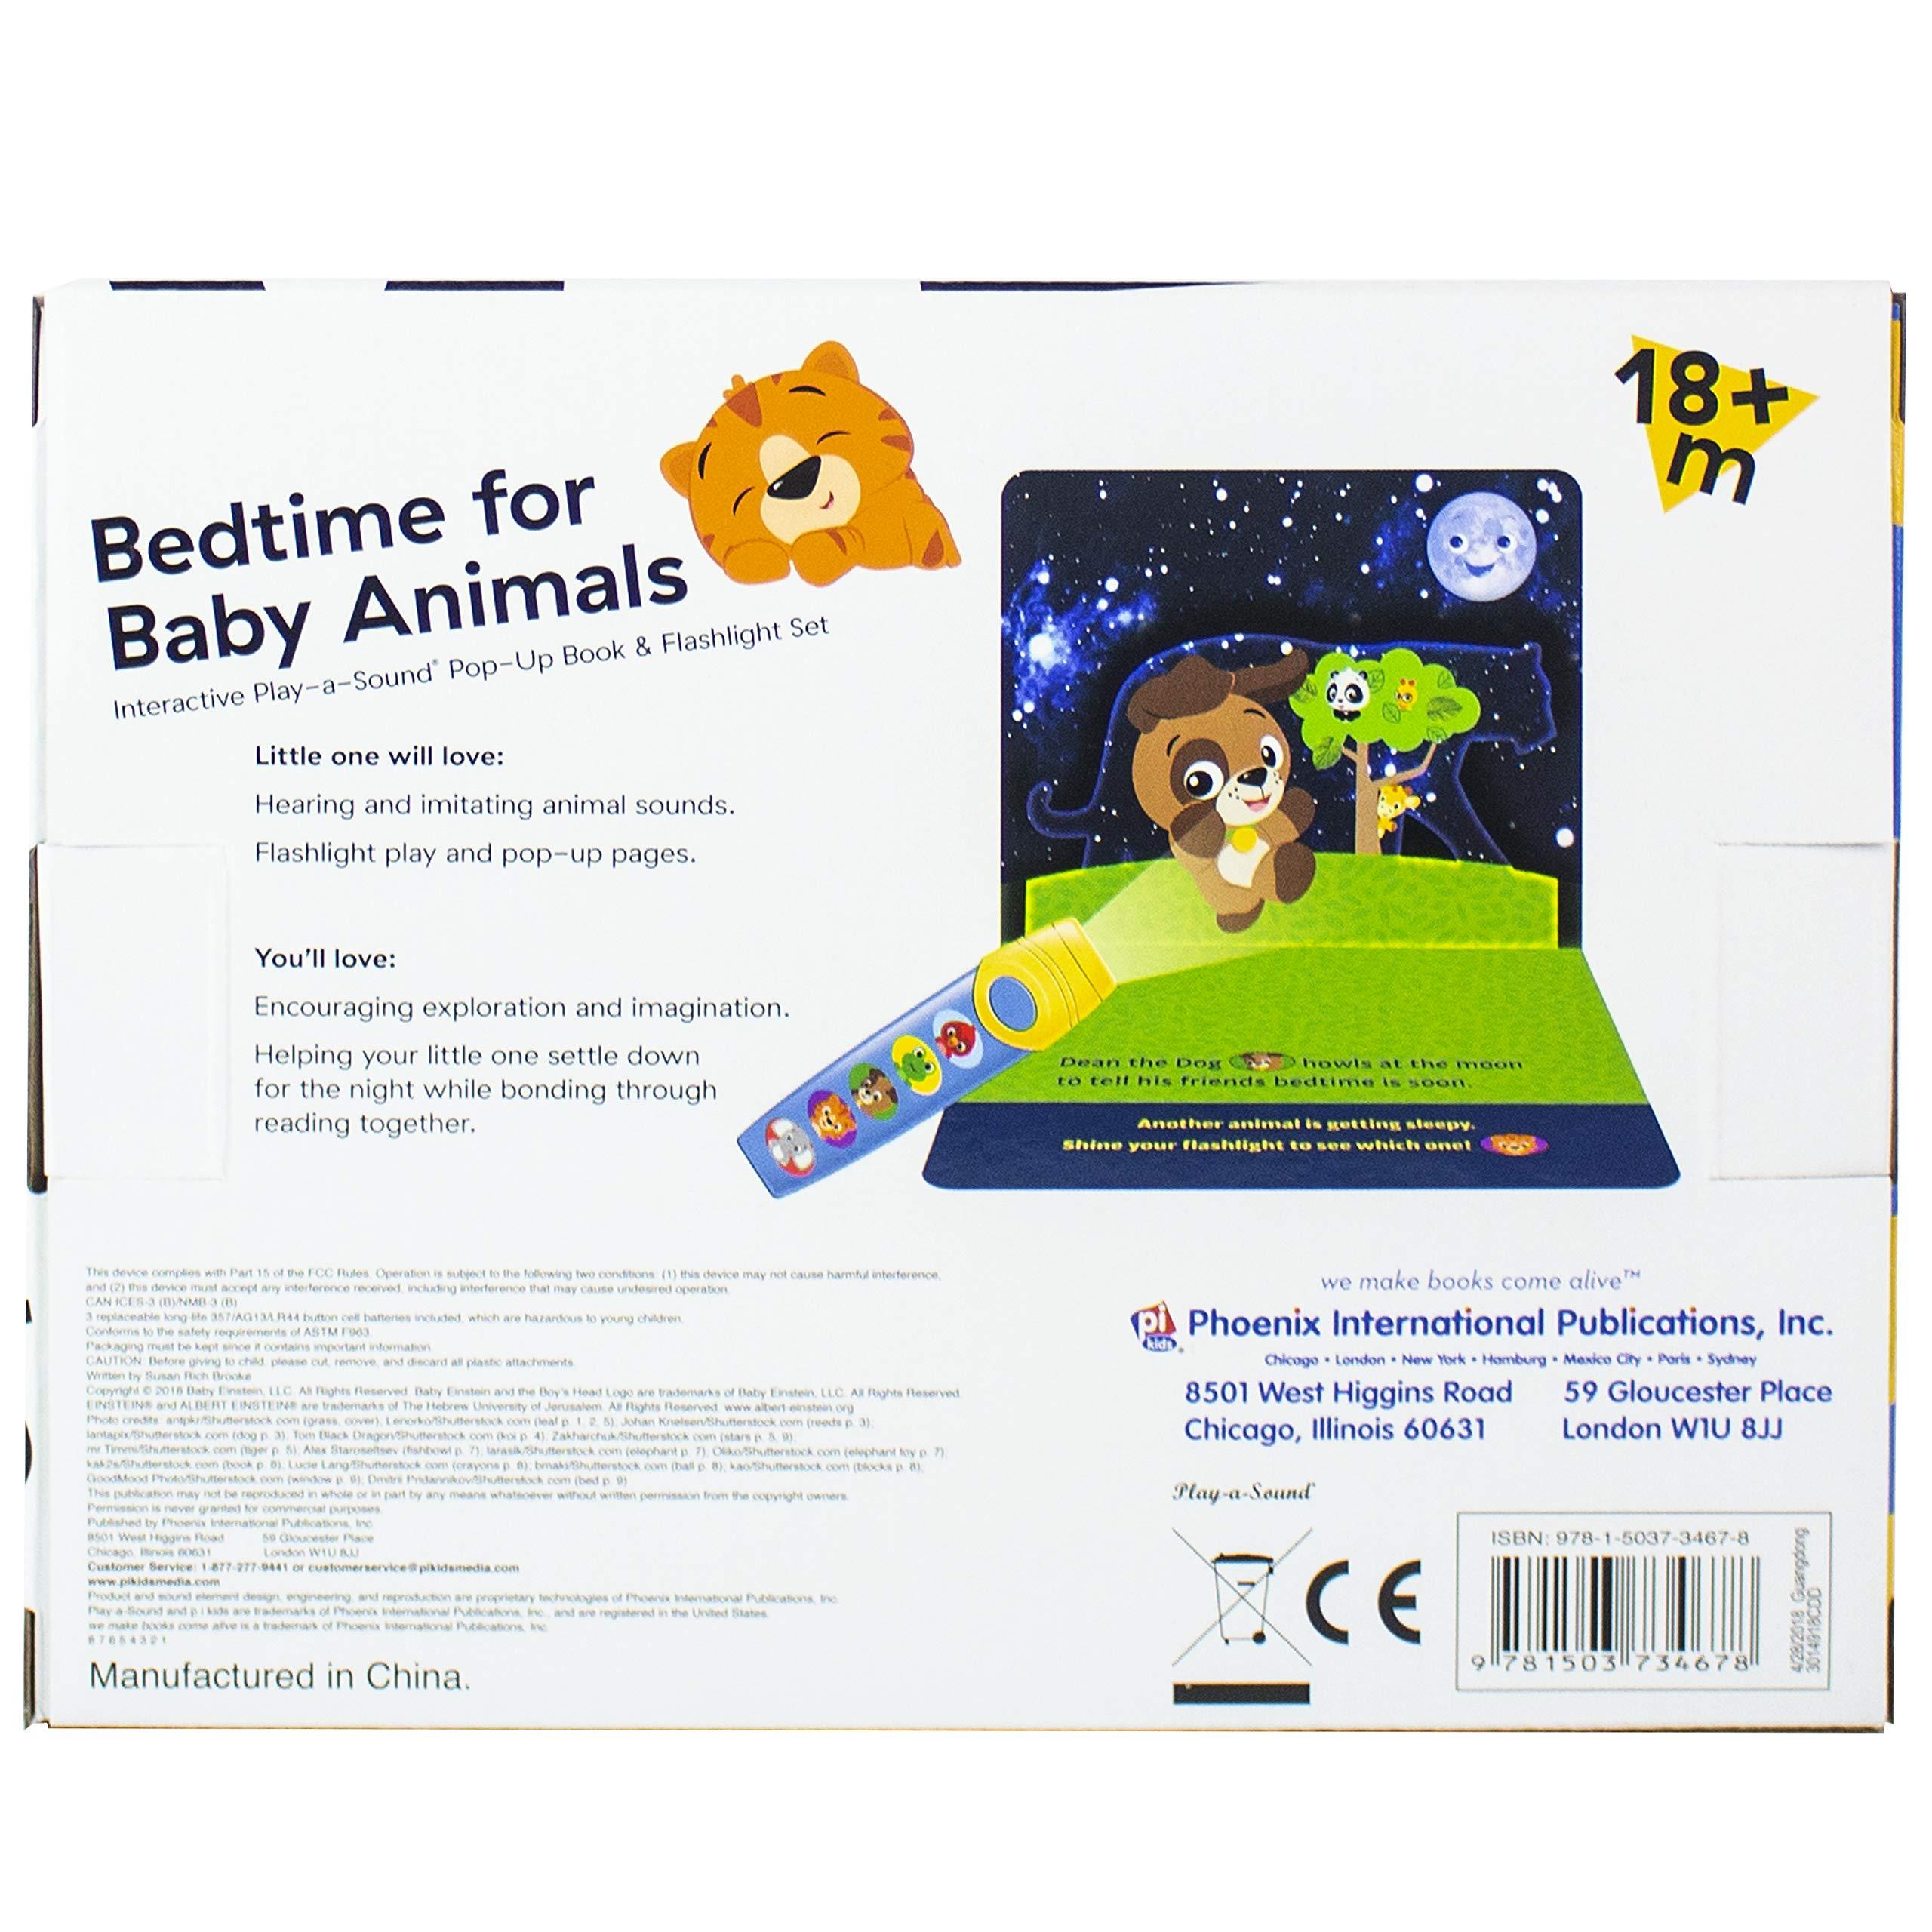 Baby Einstein - Bedtime for Baby Animals Pop-up Book & Flashlight set - Play-a-sound - Ourkids - Baby Einstein